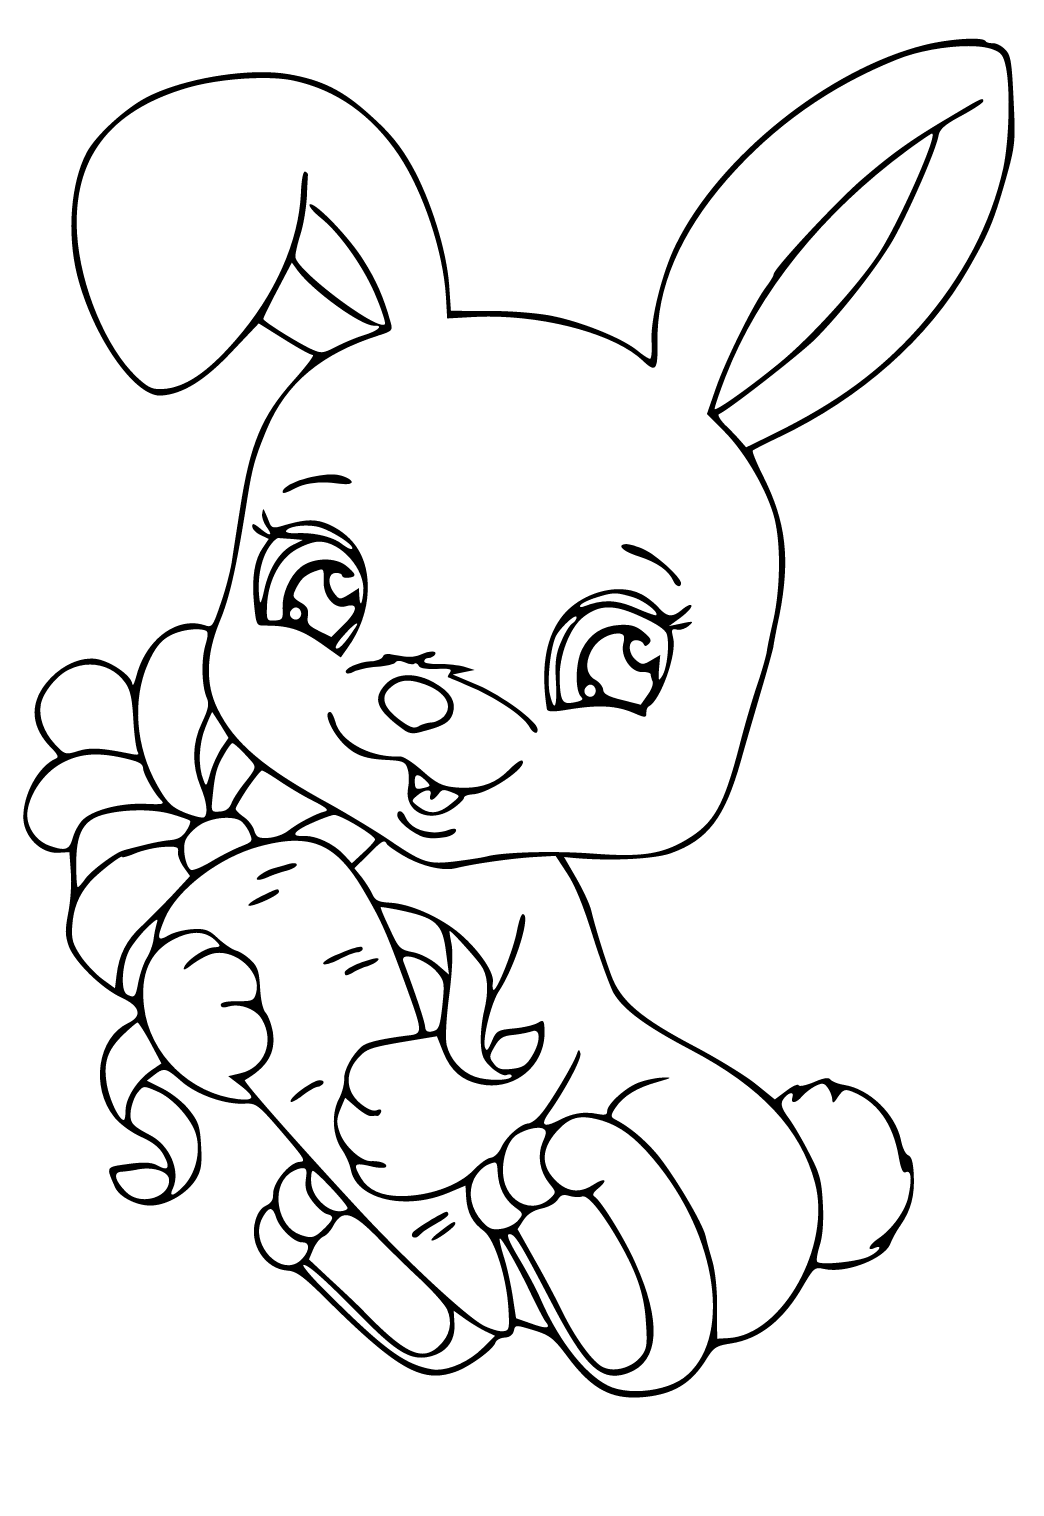 45 Hình vẽ con thỏ để tô màu đẹp và dễ thương cho trẻ em